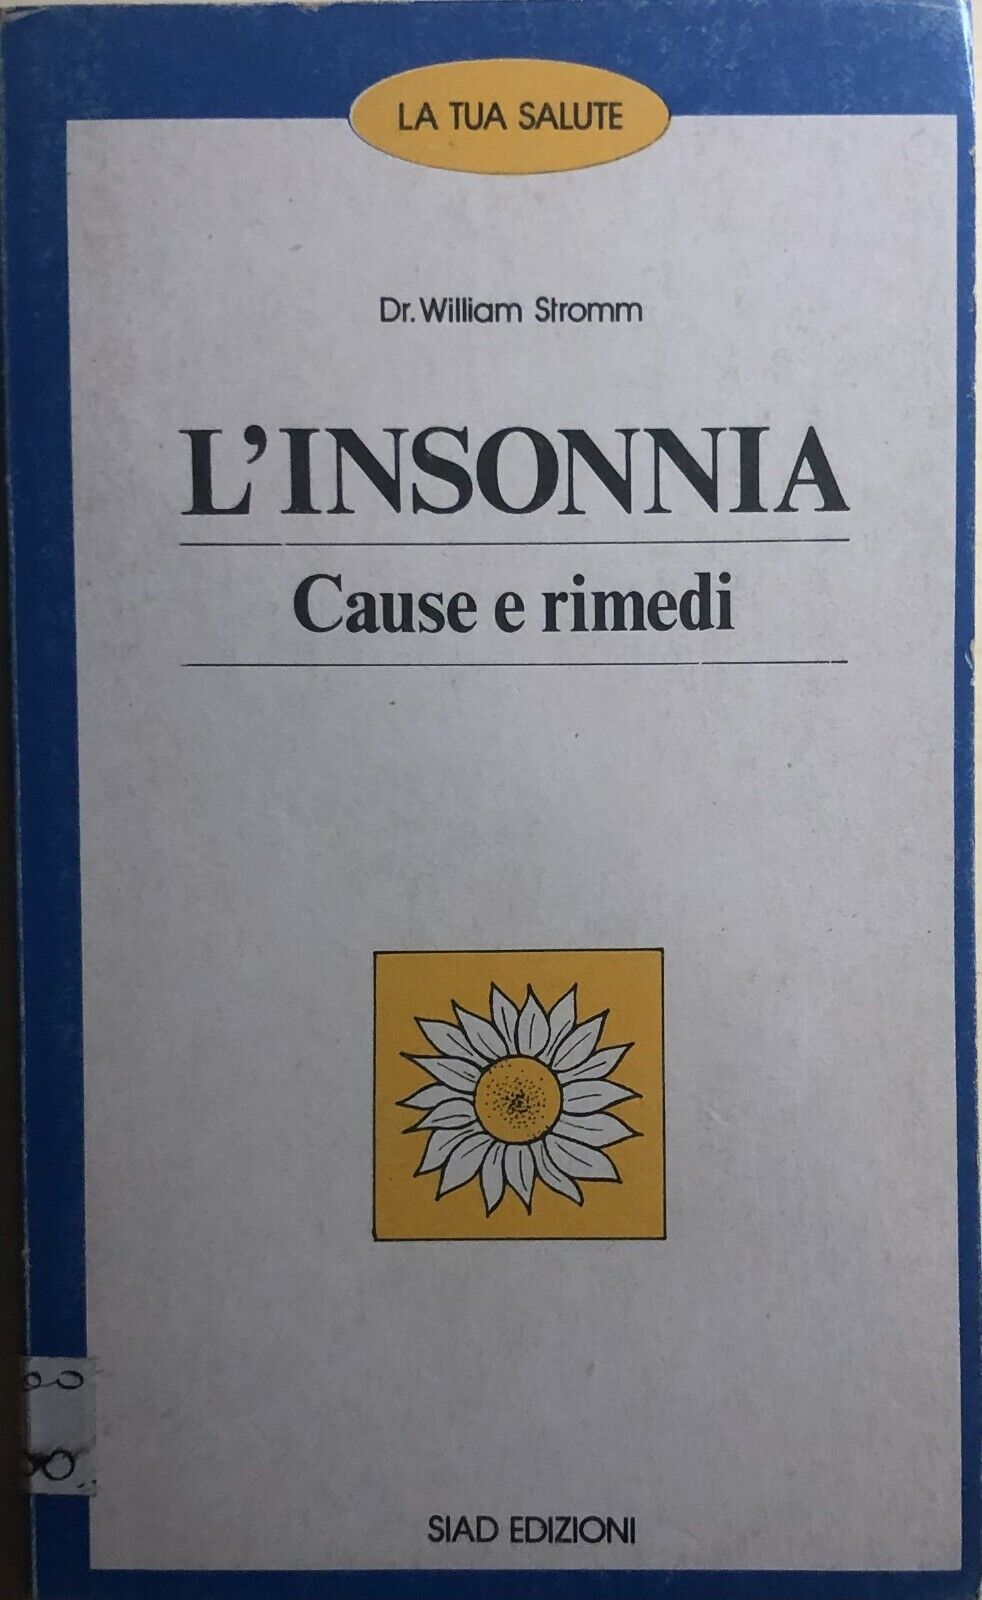 L'insonnia: cause e rimedi di Dr. William Stromm, 1982, Siad Edizioni